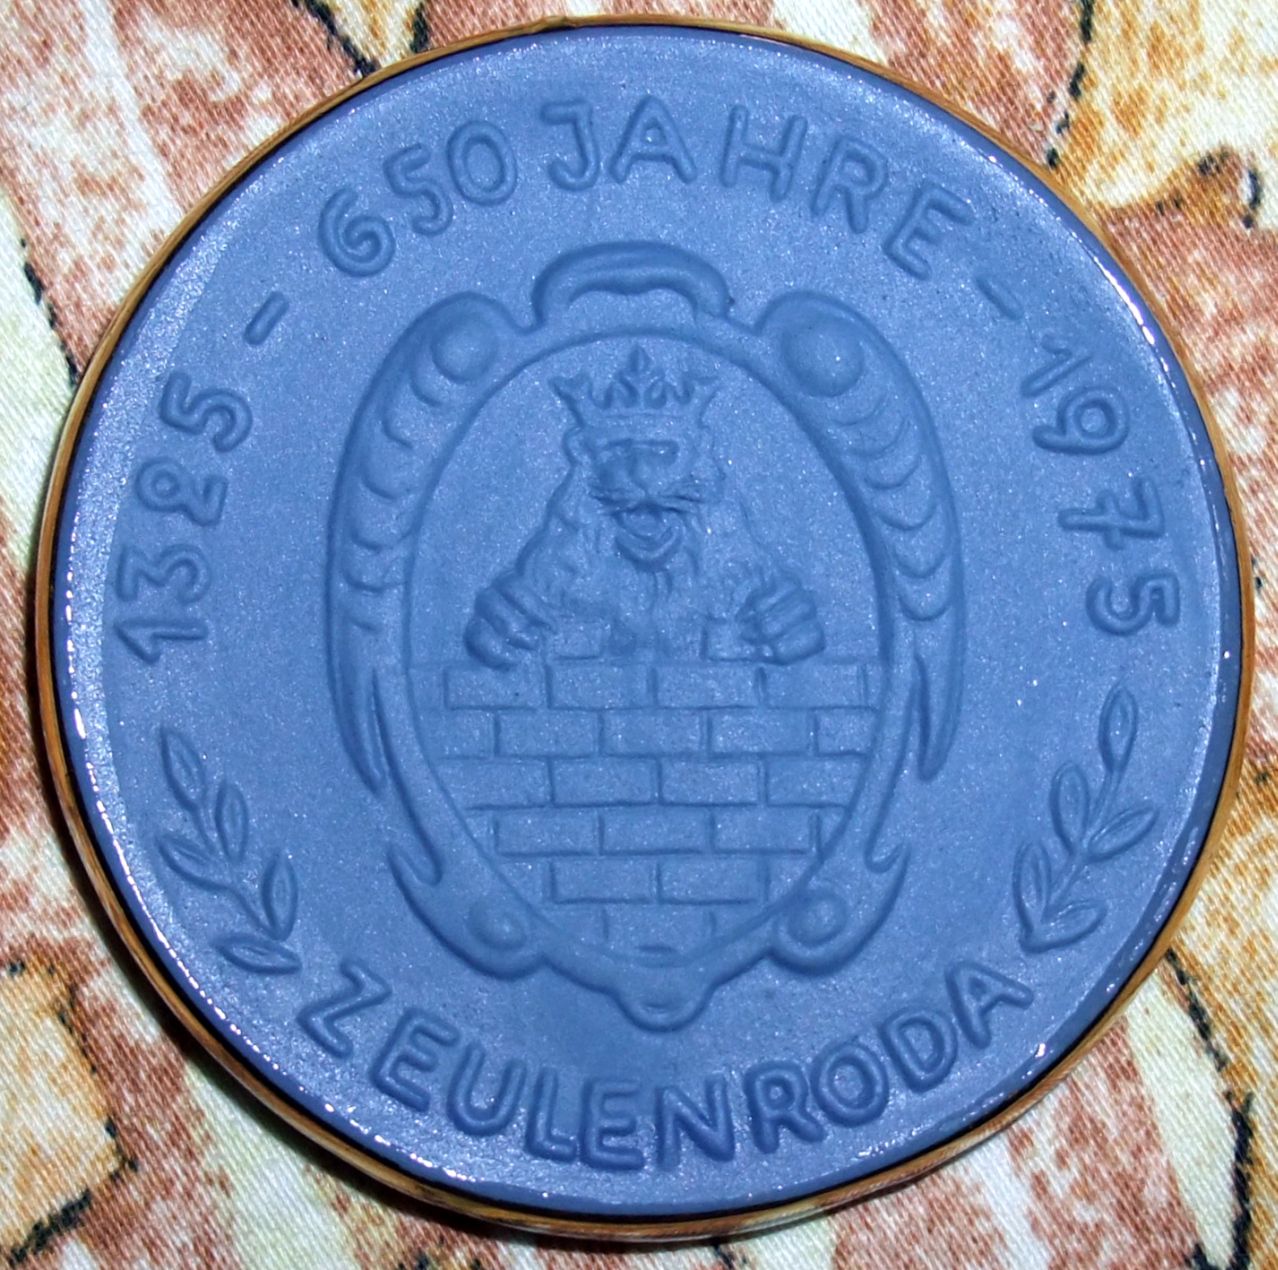 Medaille 650 Jahre Zeulenroda - 1325 - 1975. 1325 erstmals benannt - Vorderseite